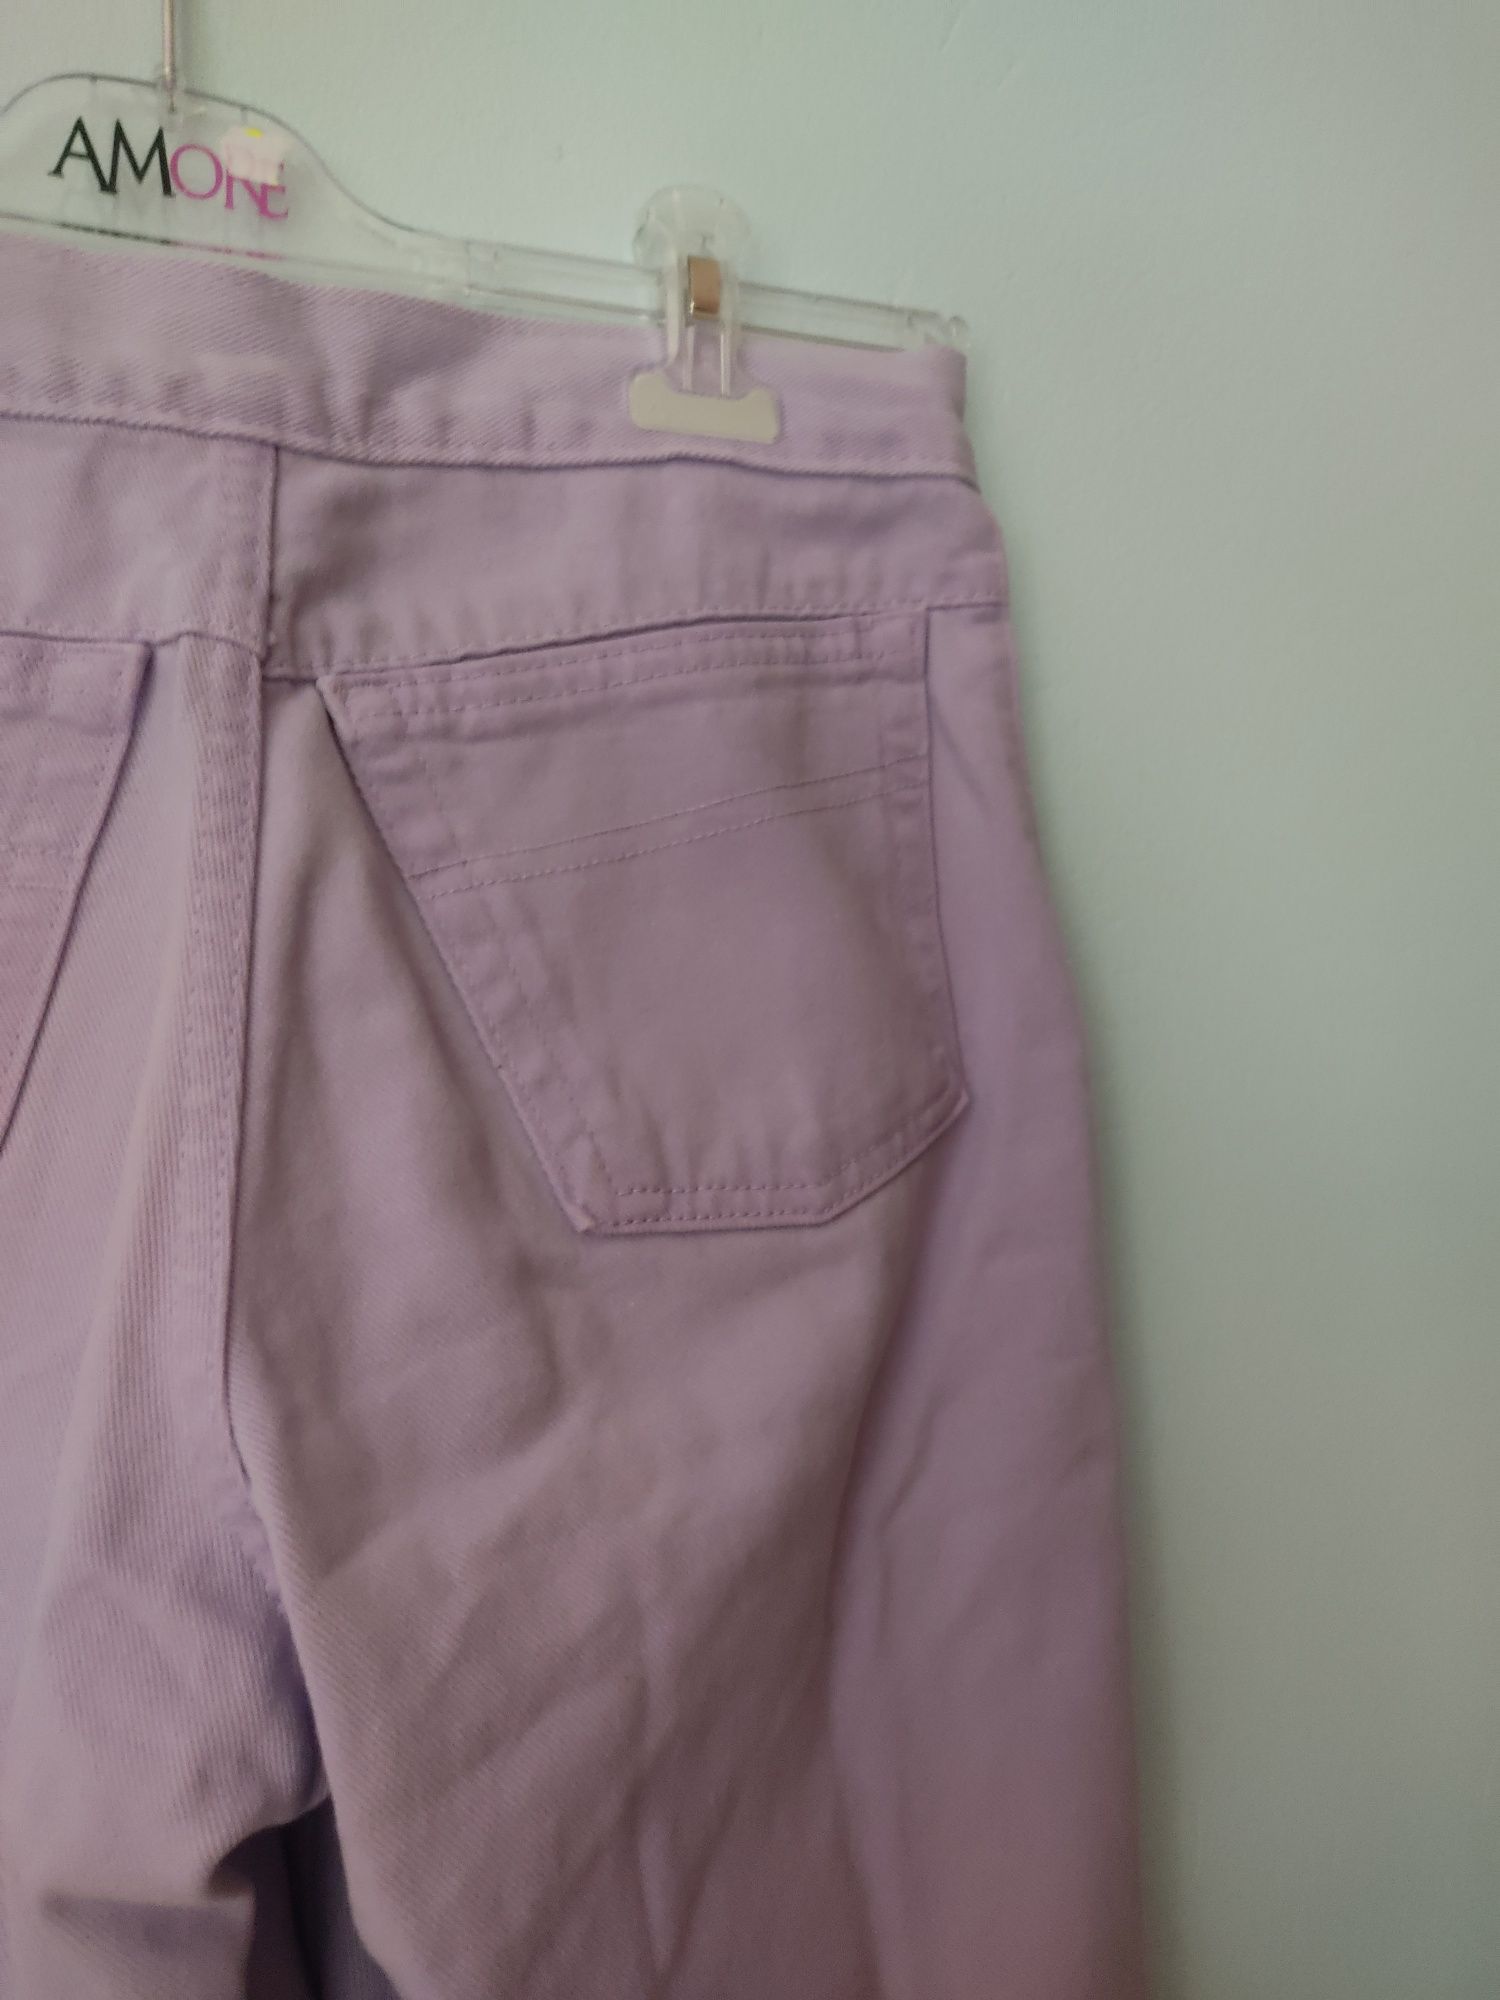 Liliowe spodenki dżinsy szorty  dżinsowe damskie Basic z kieszeniami L